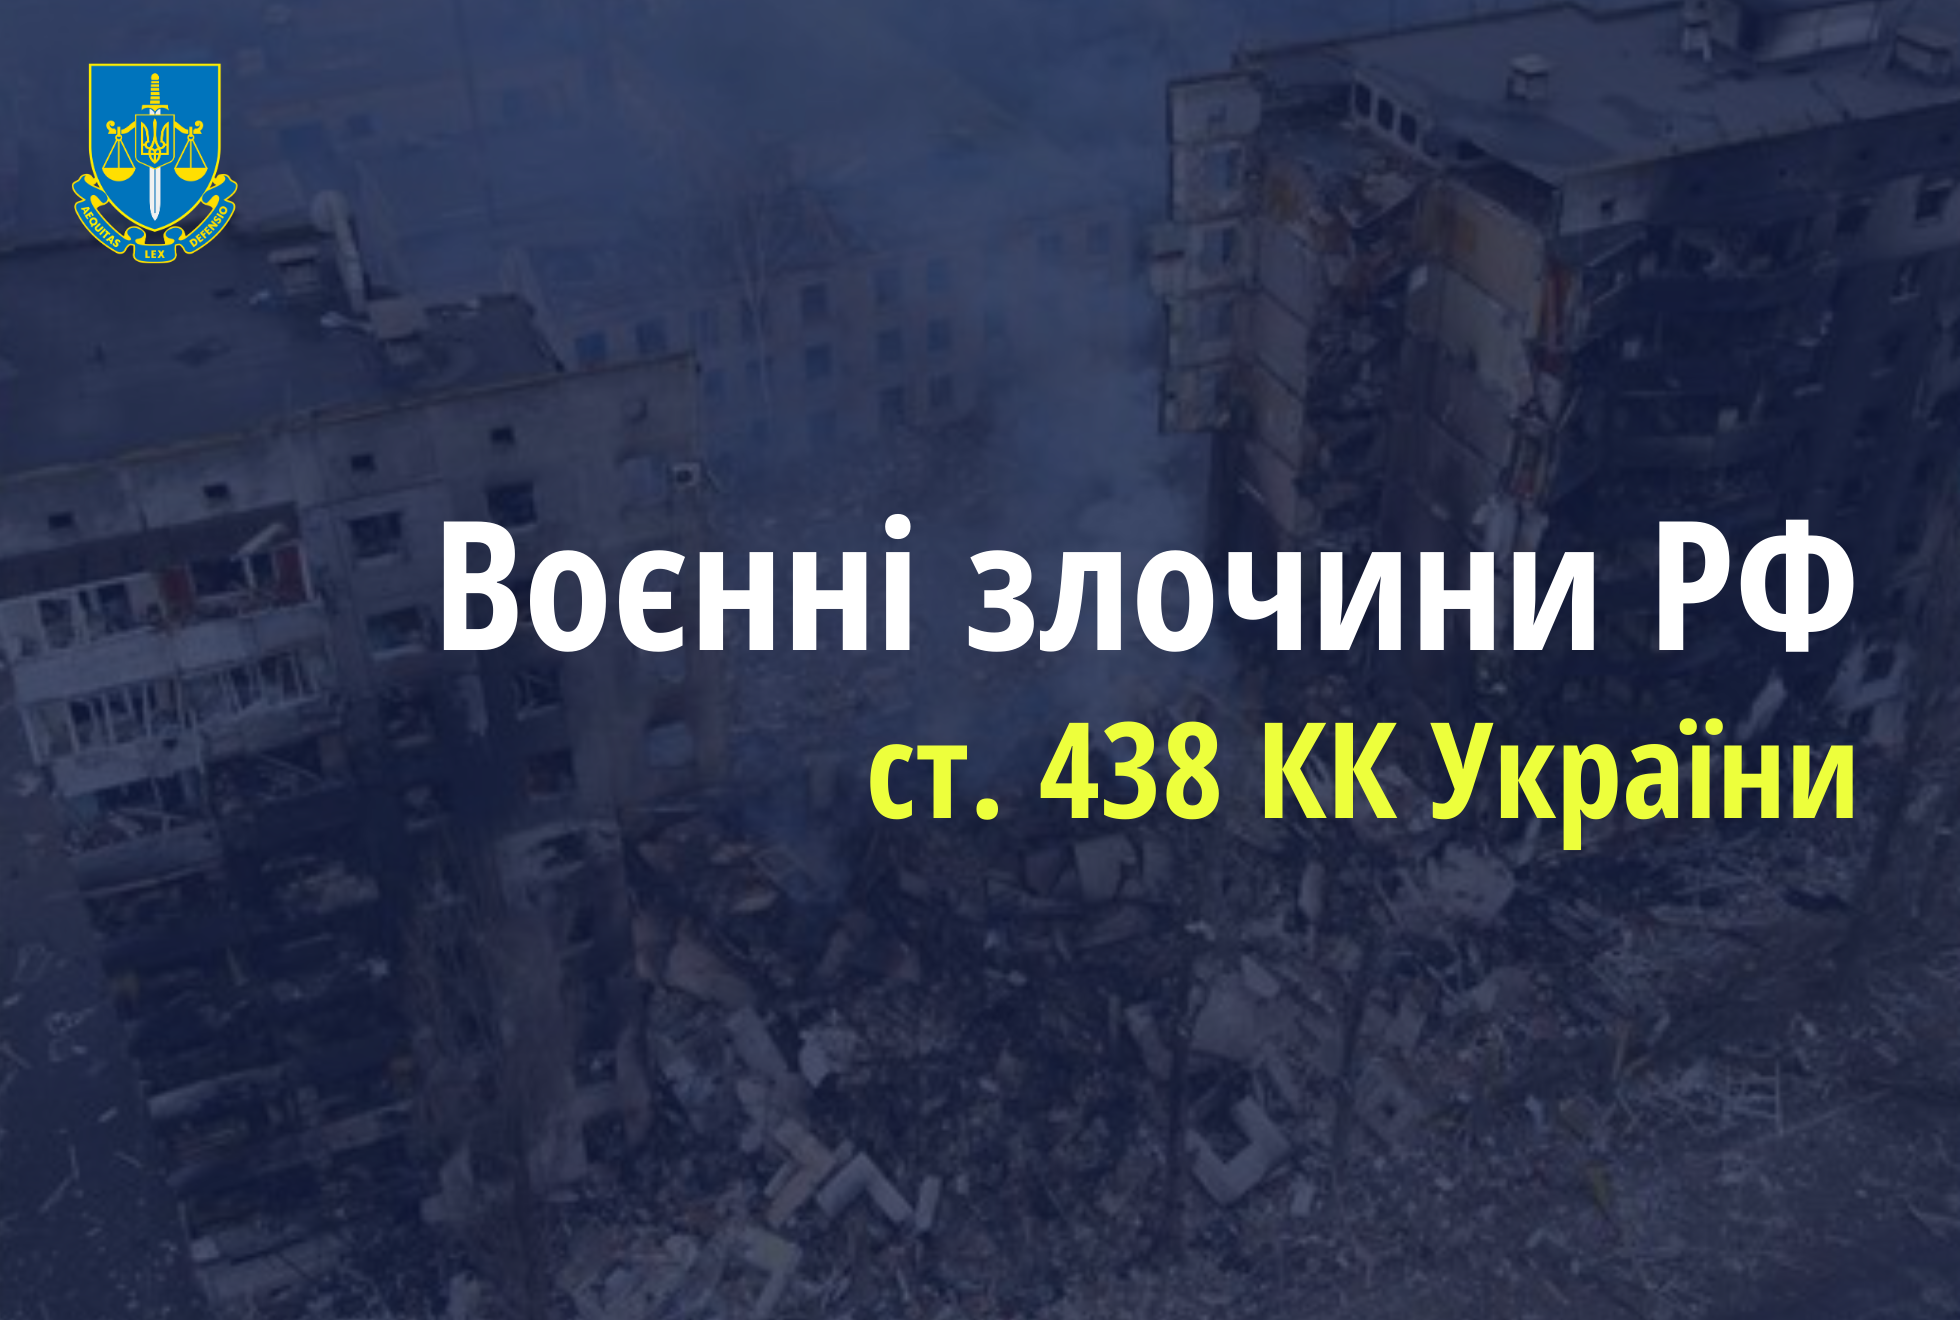 Чергова ракетна атака по критичній інфраструктурі на Івано-Франківщині - розпочато провадження